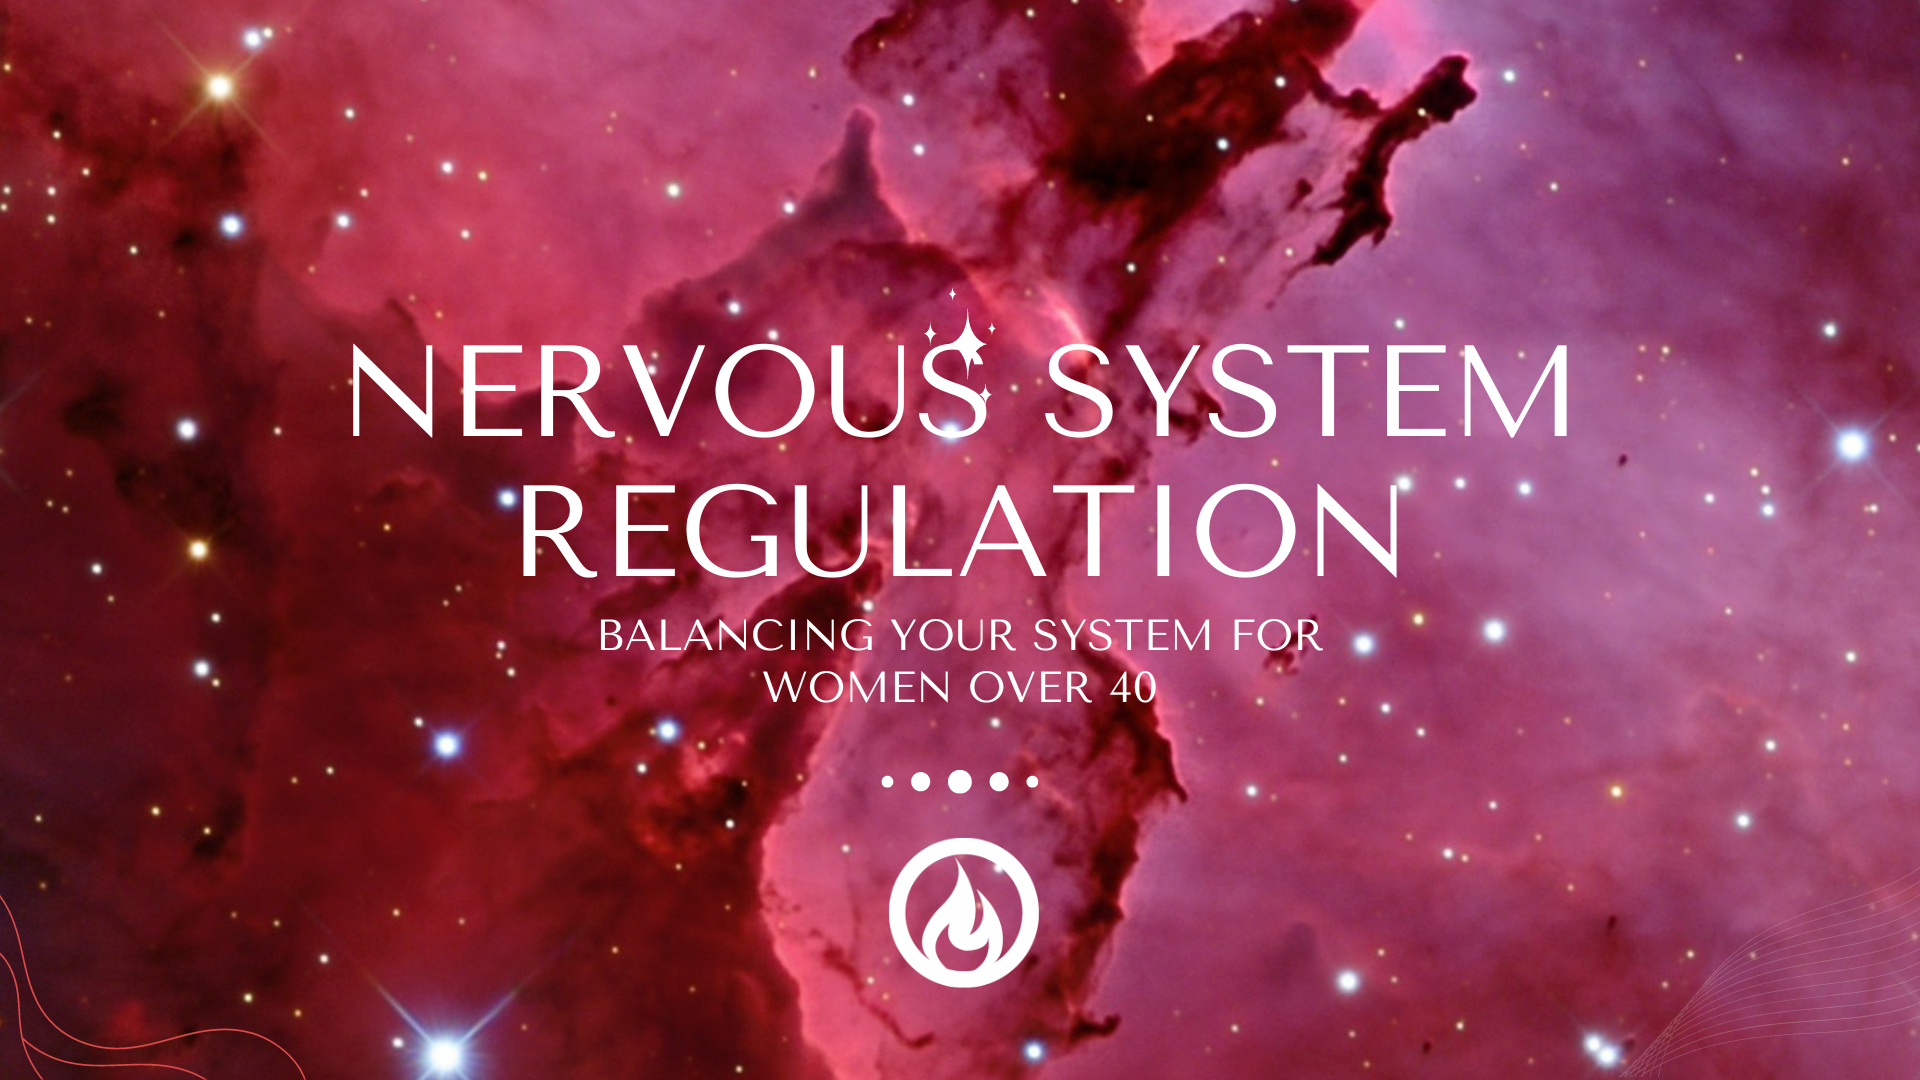 Nervous System Regulation for Women over 40